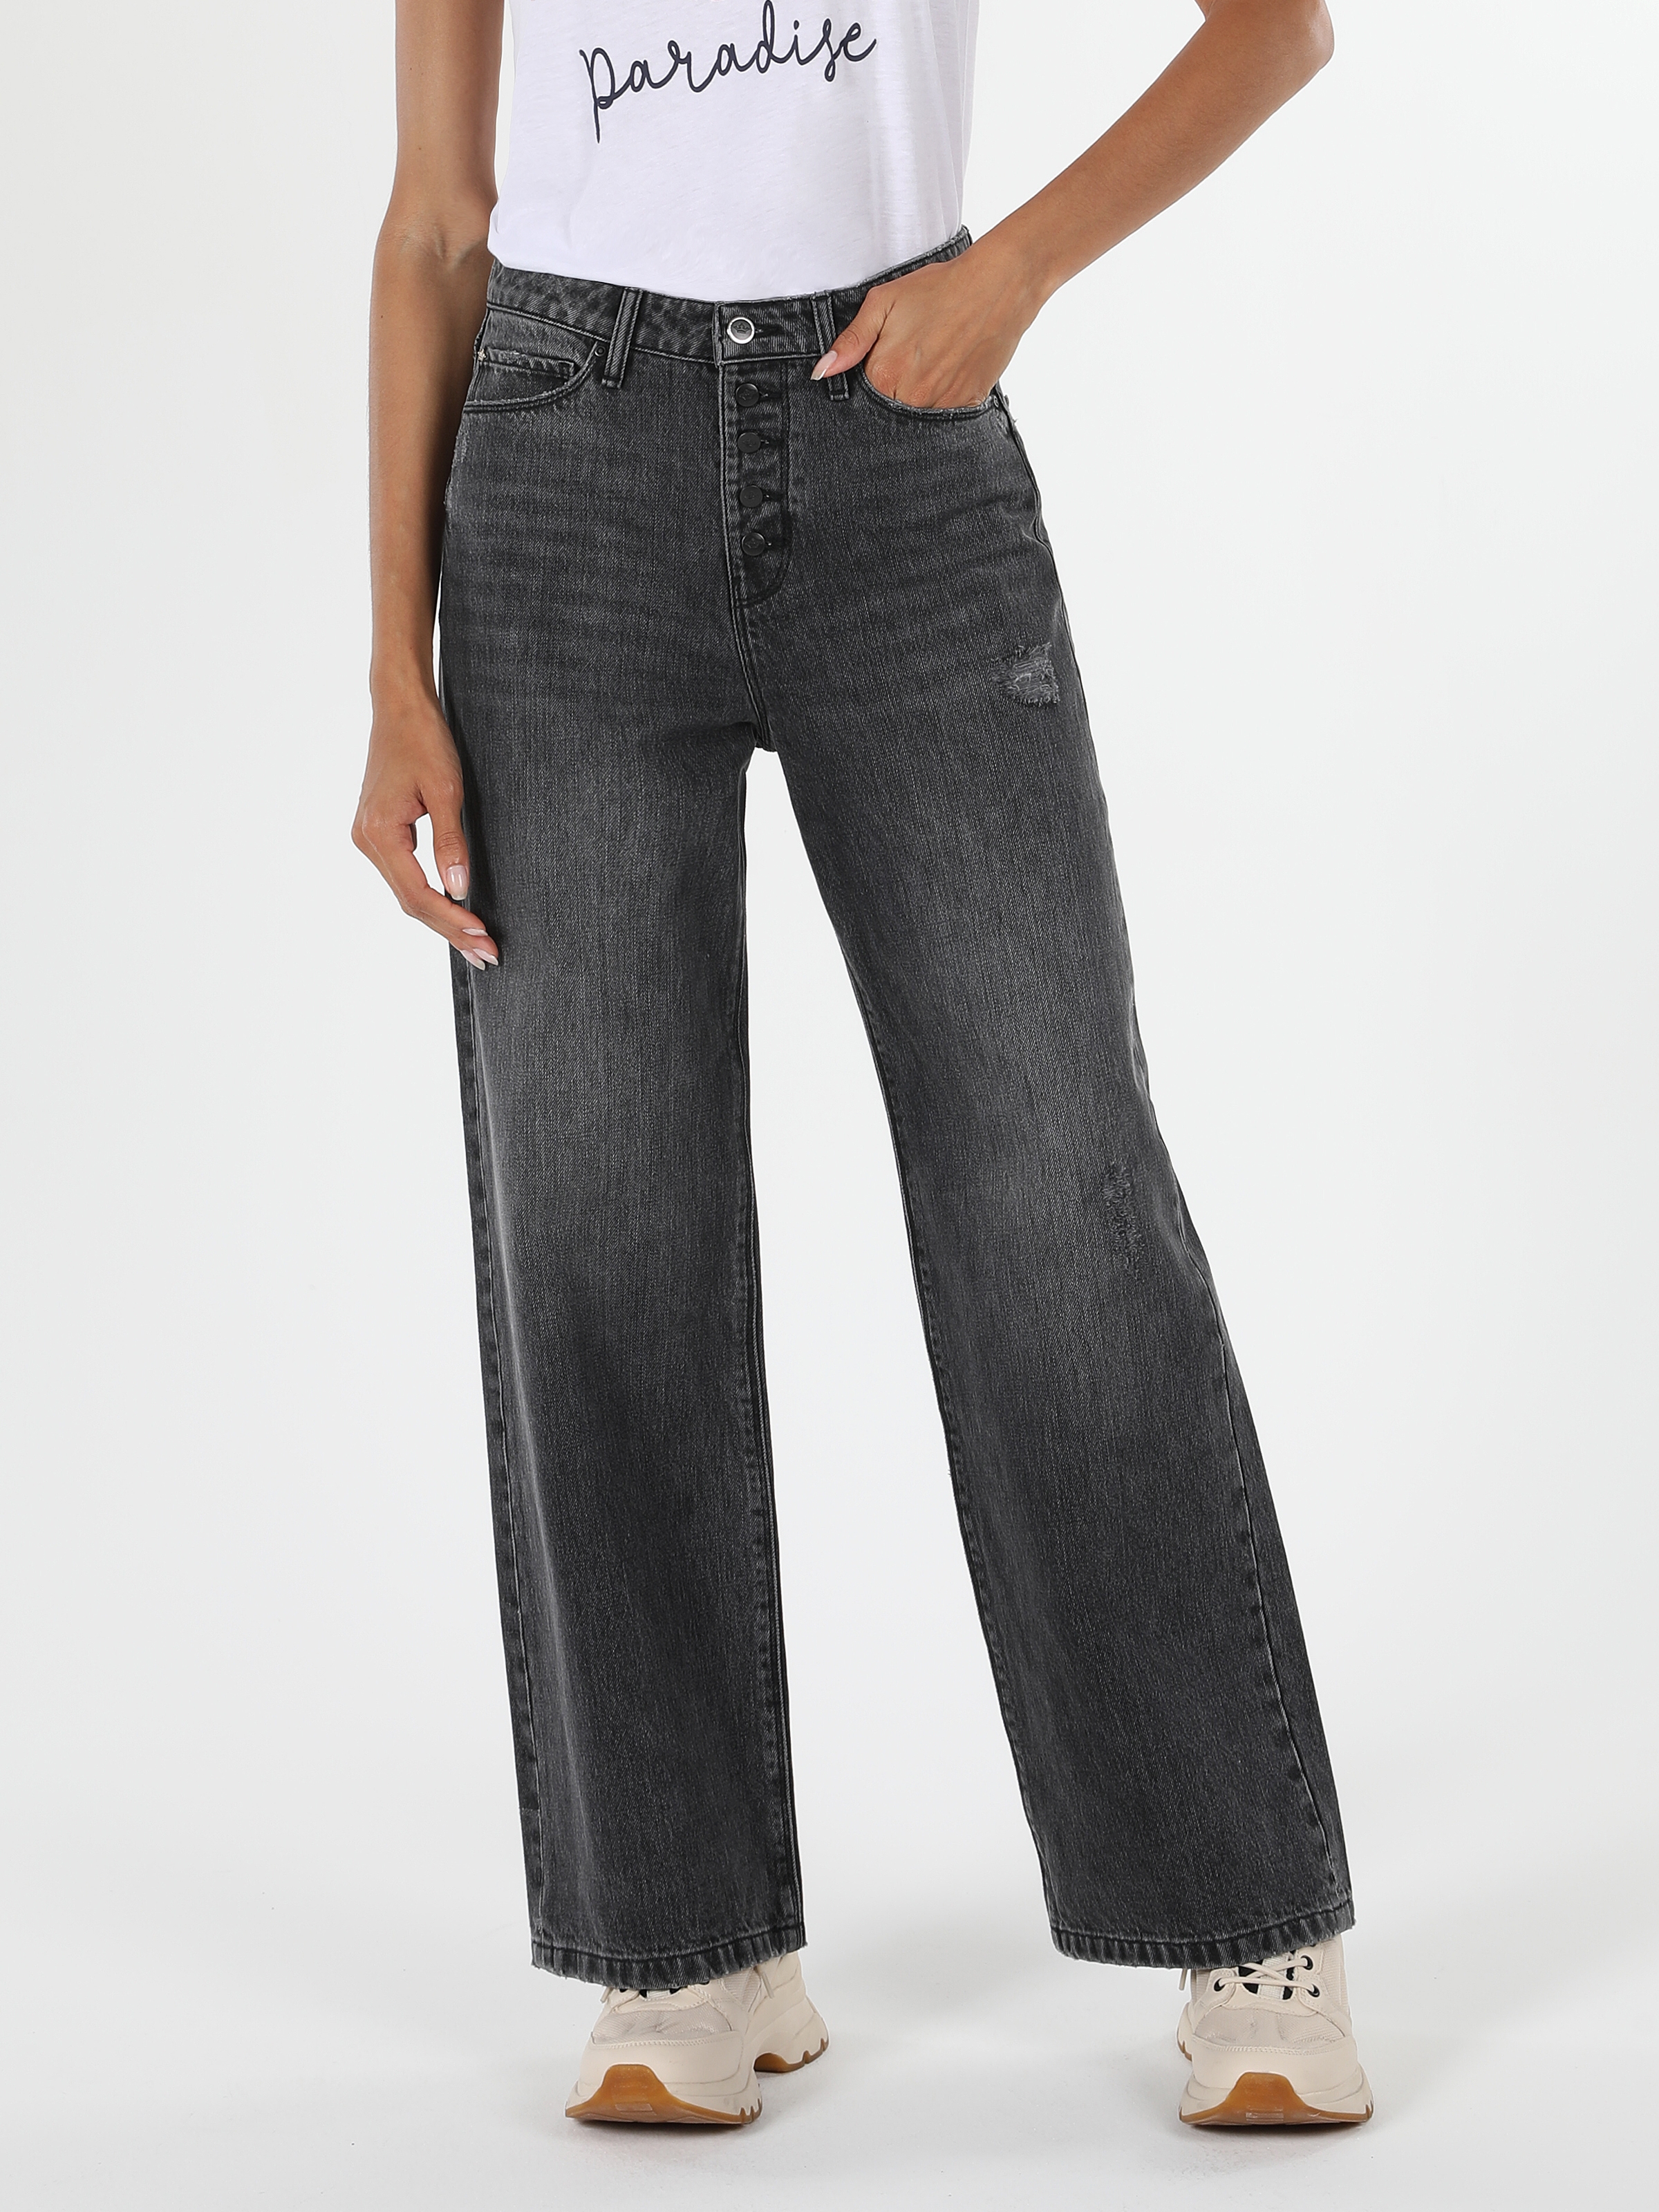 Afficher les détails de 970 Berry Pantalon En Jean Noir Taille Haute Coupe Régulière Pour Femme